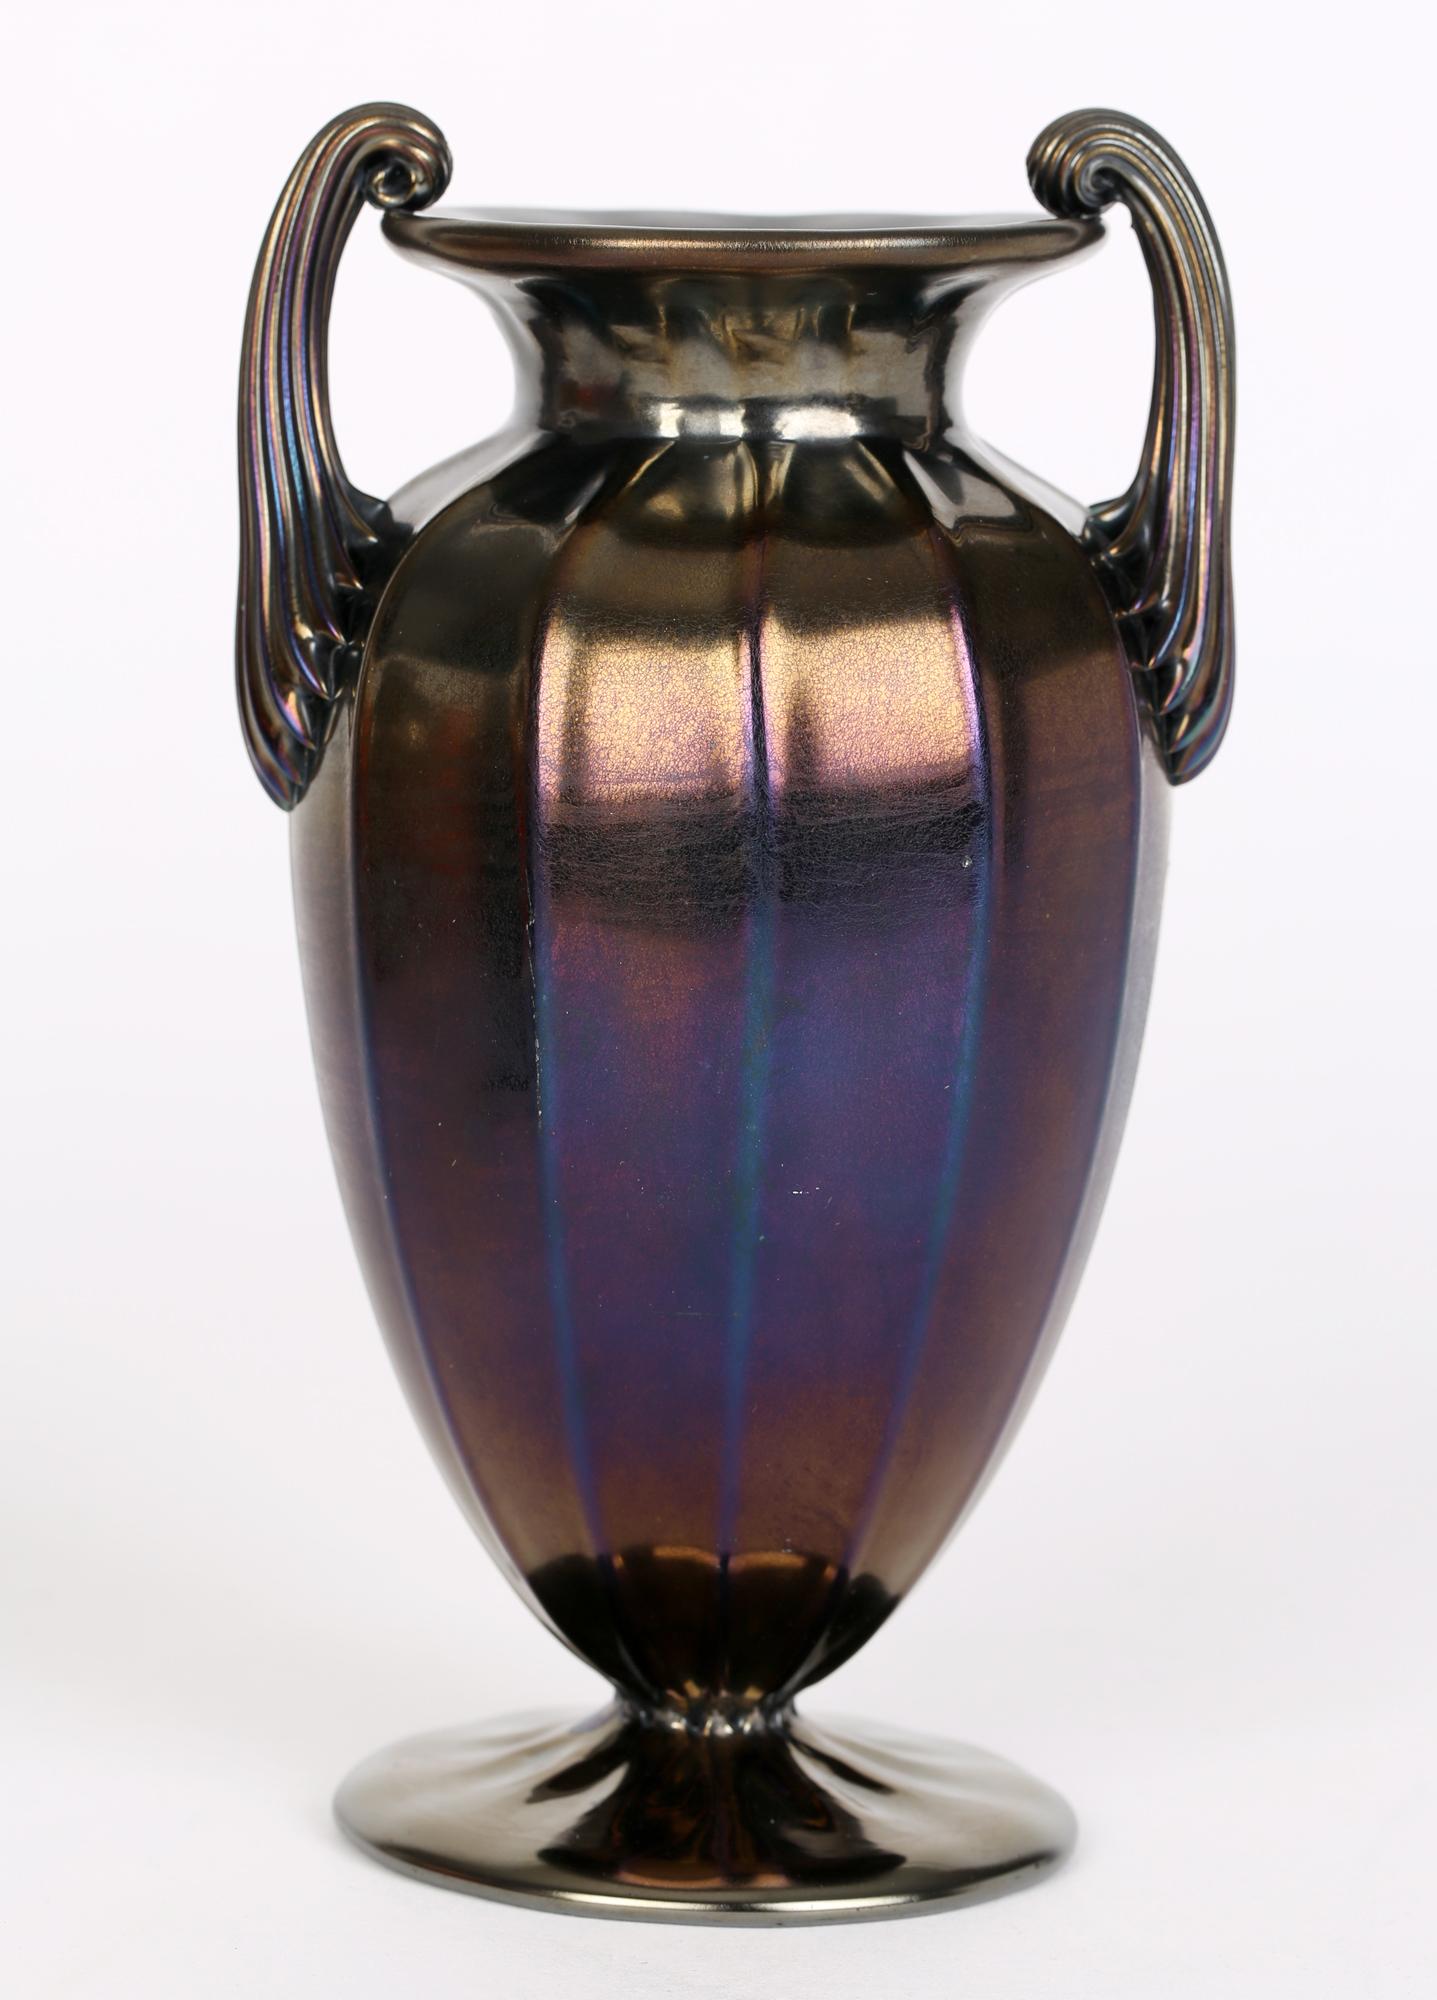 iridescent antique glass